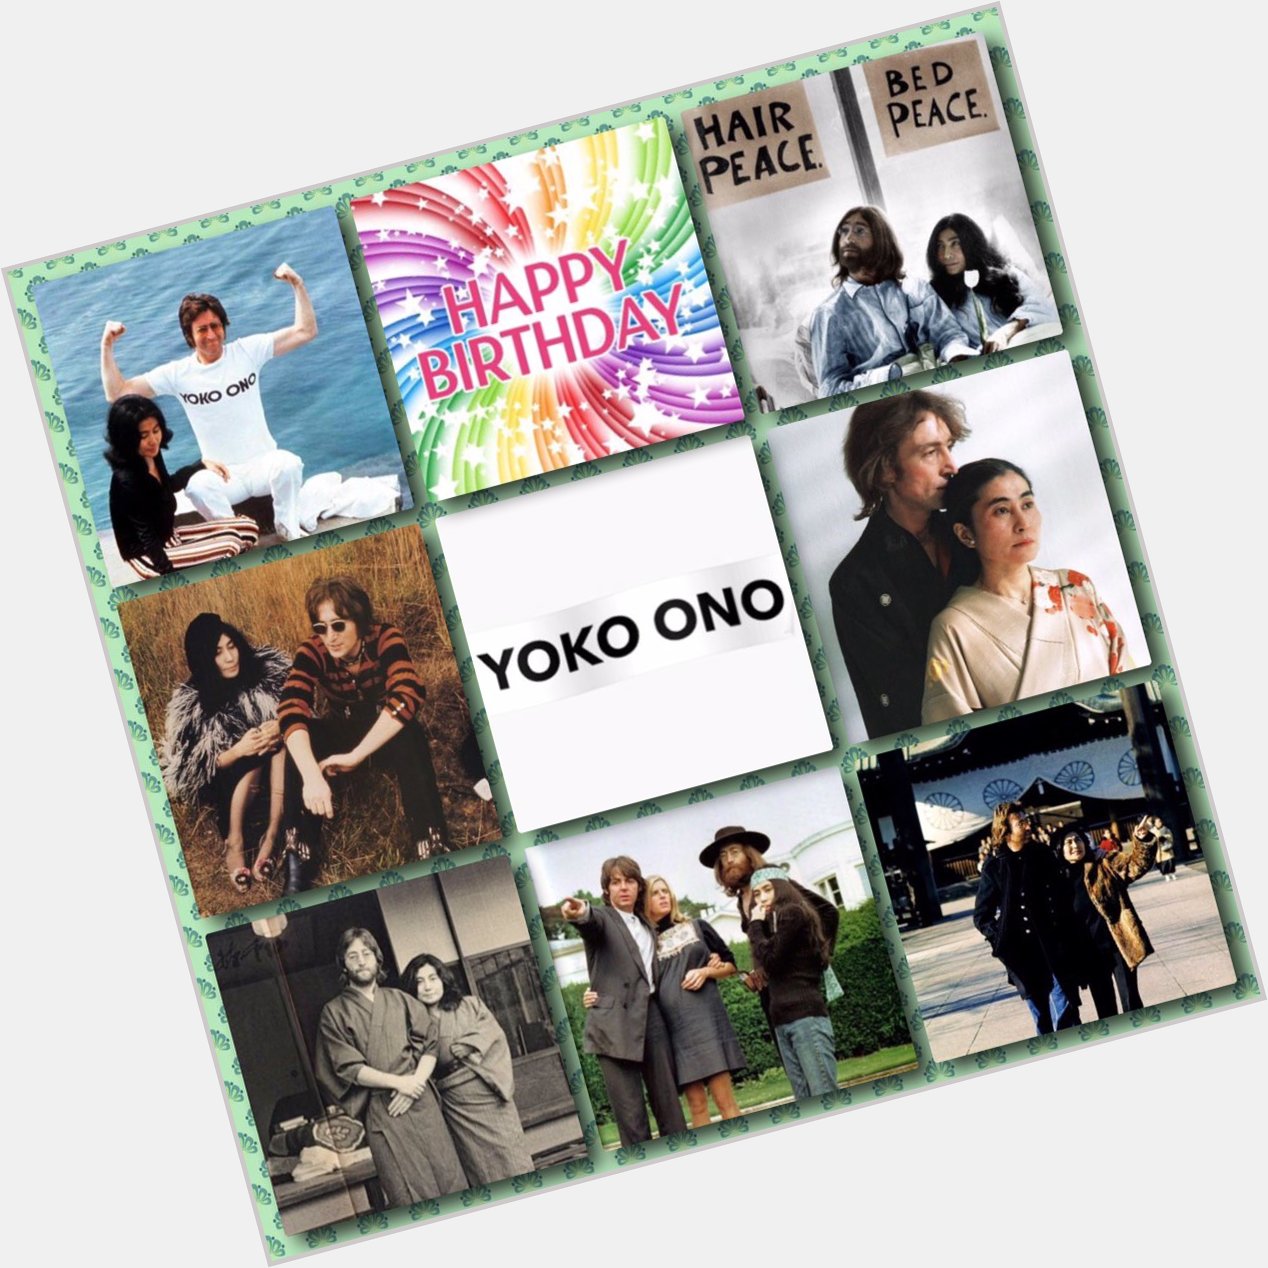   Happy Birthday Yoko Ono!    Love & Peace           